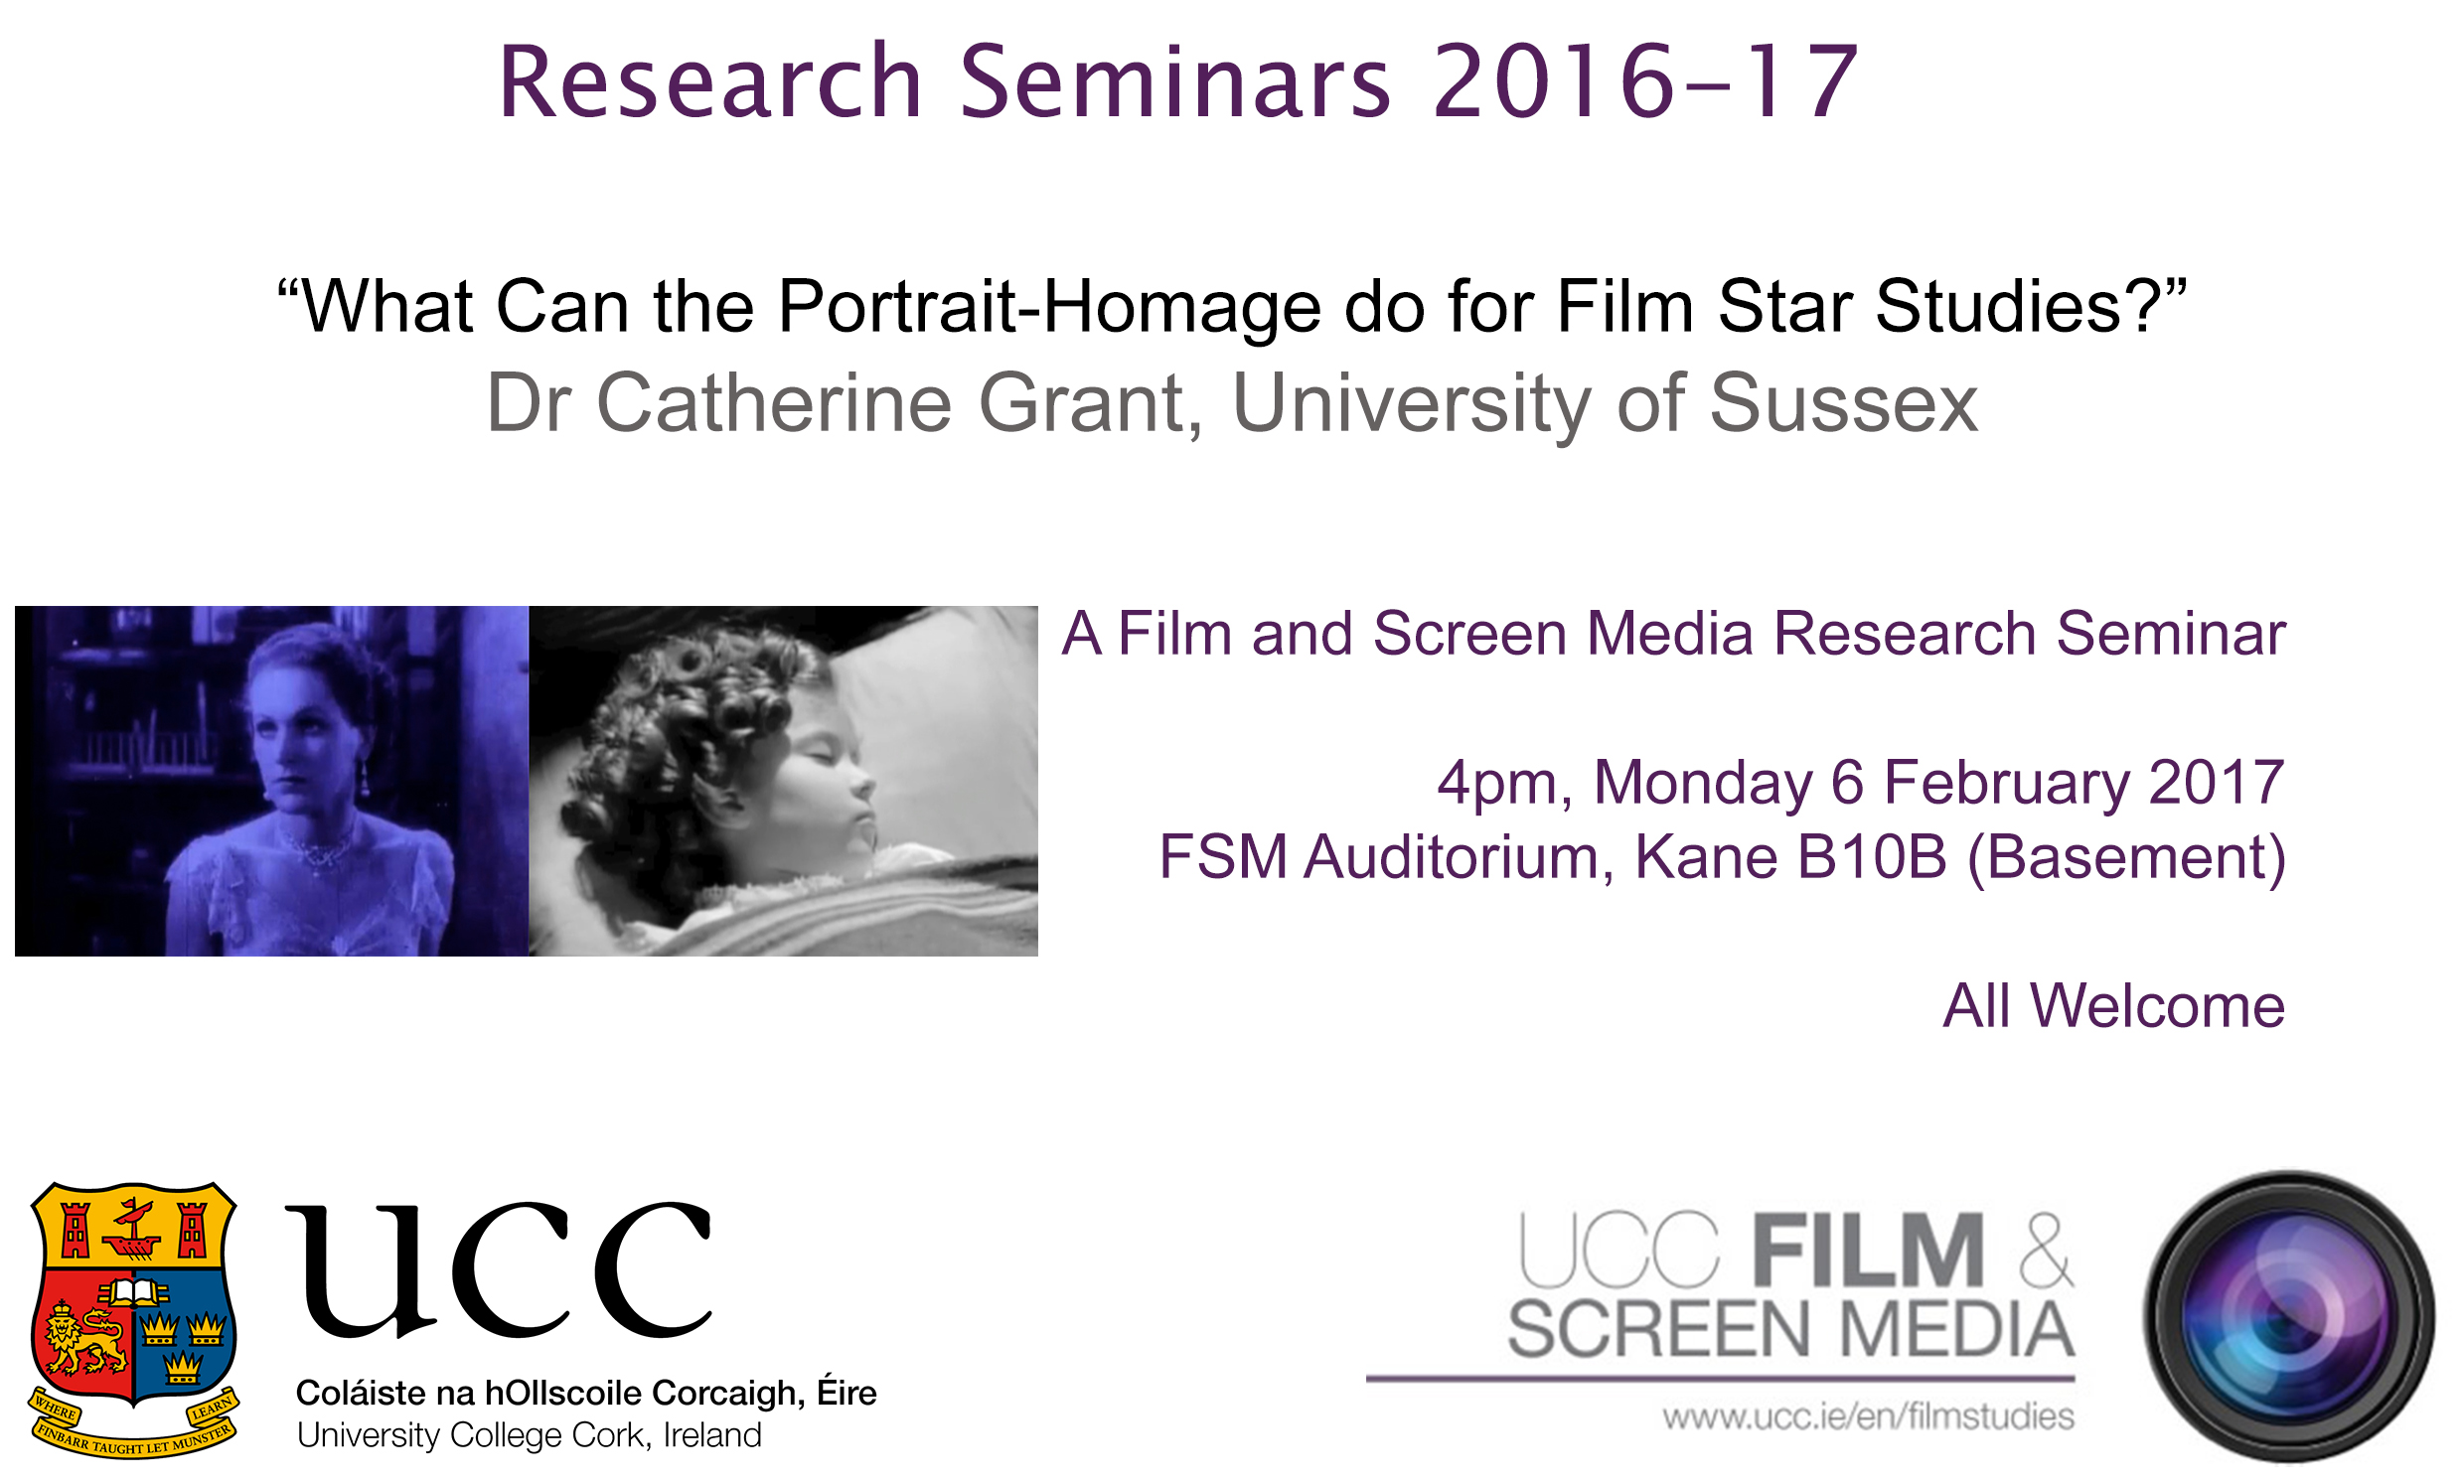 Film and Screen Media Research Seminar